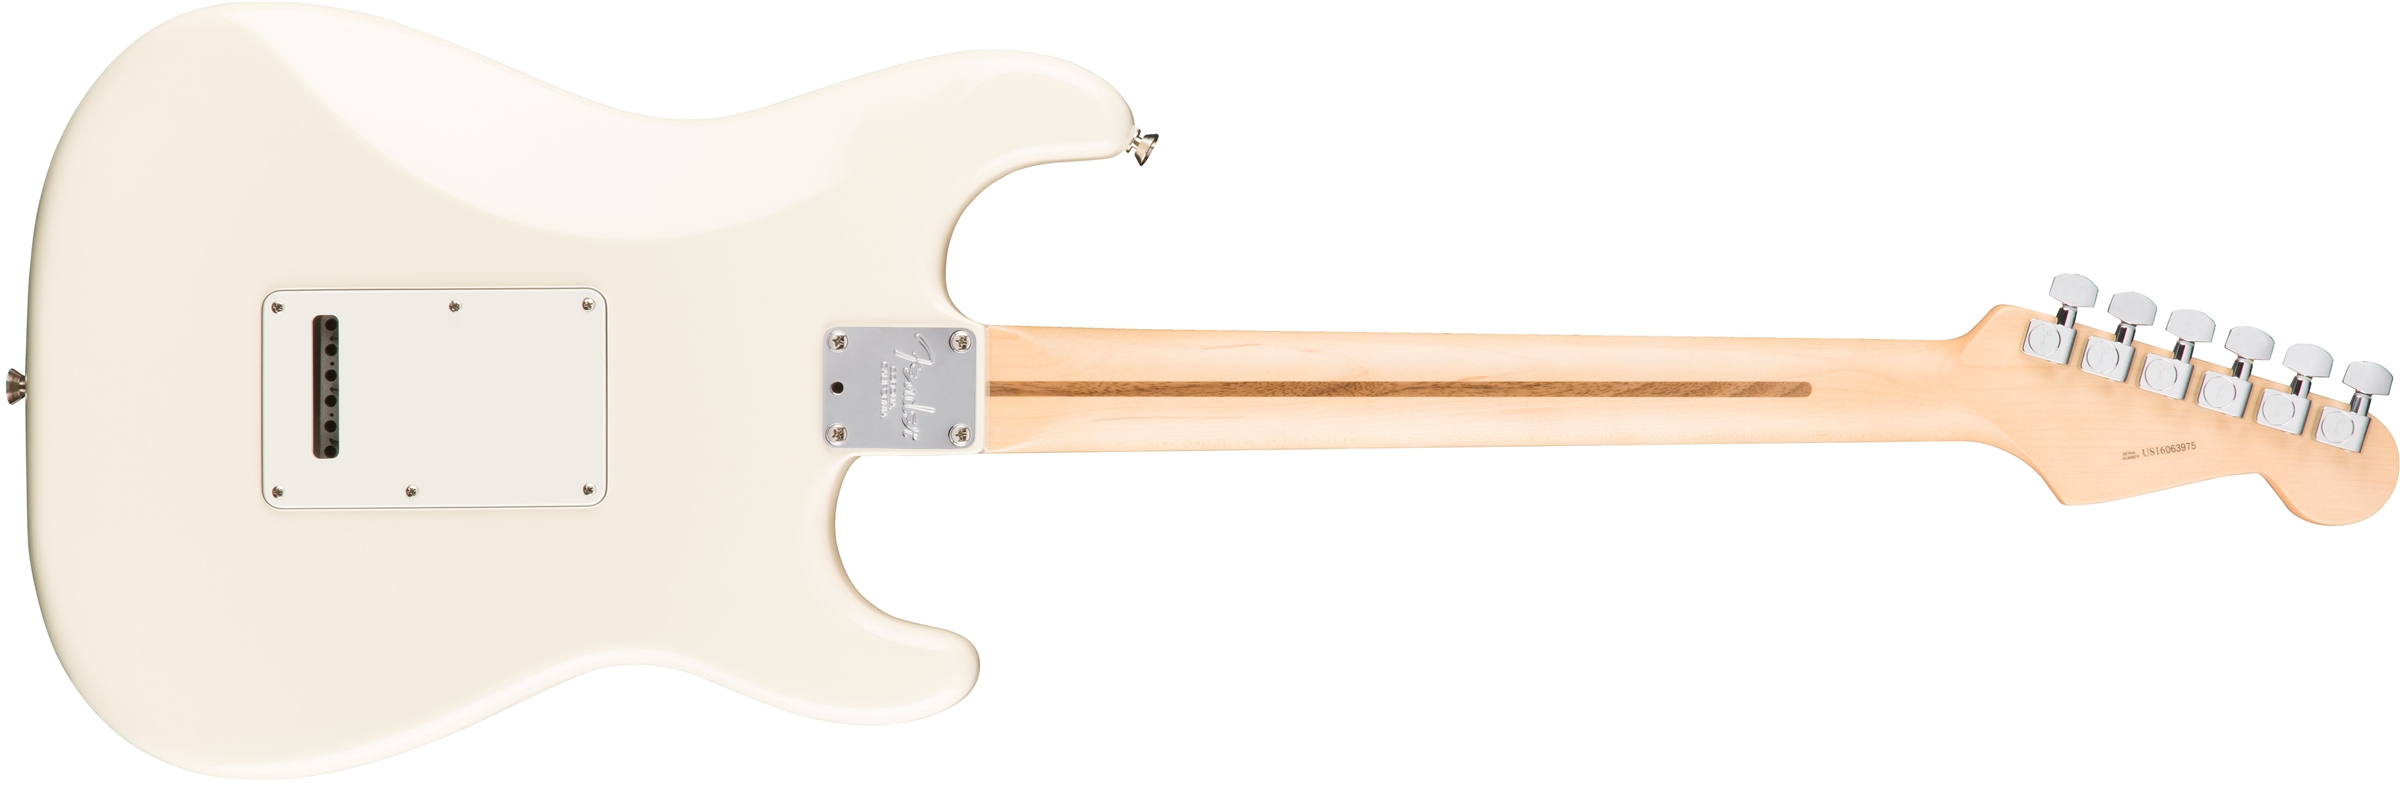 Fender Strat American Professional Lh Usa Gaucher 3s Mn - Olympic White - E-Gitarre für Linkshänder - Variation 1